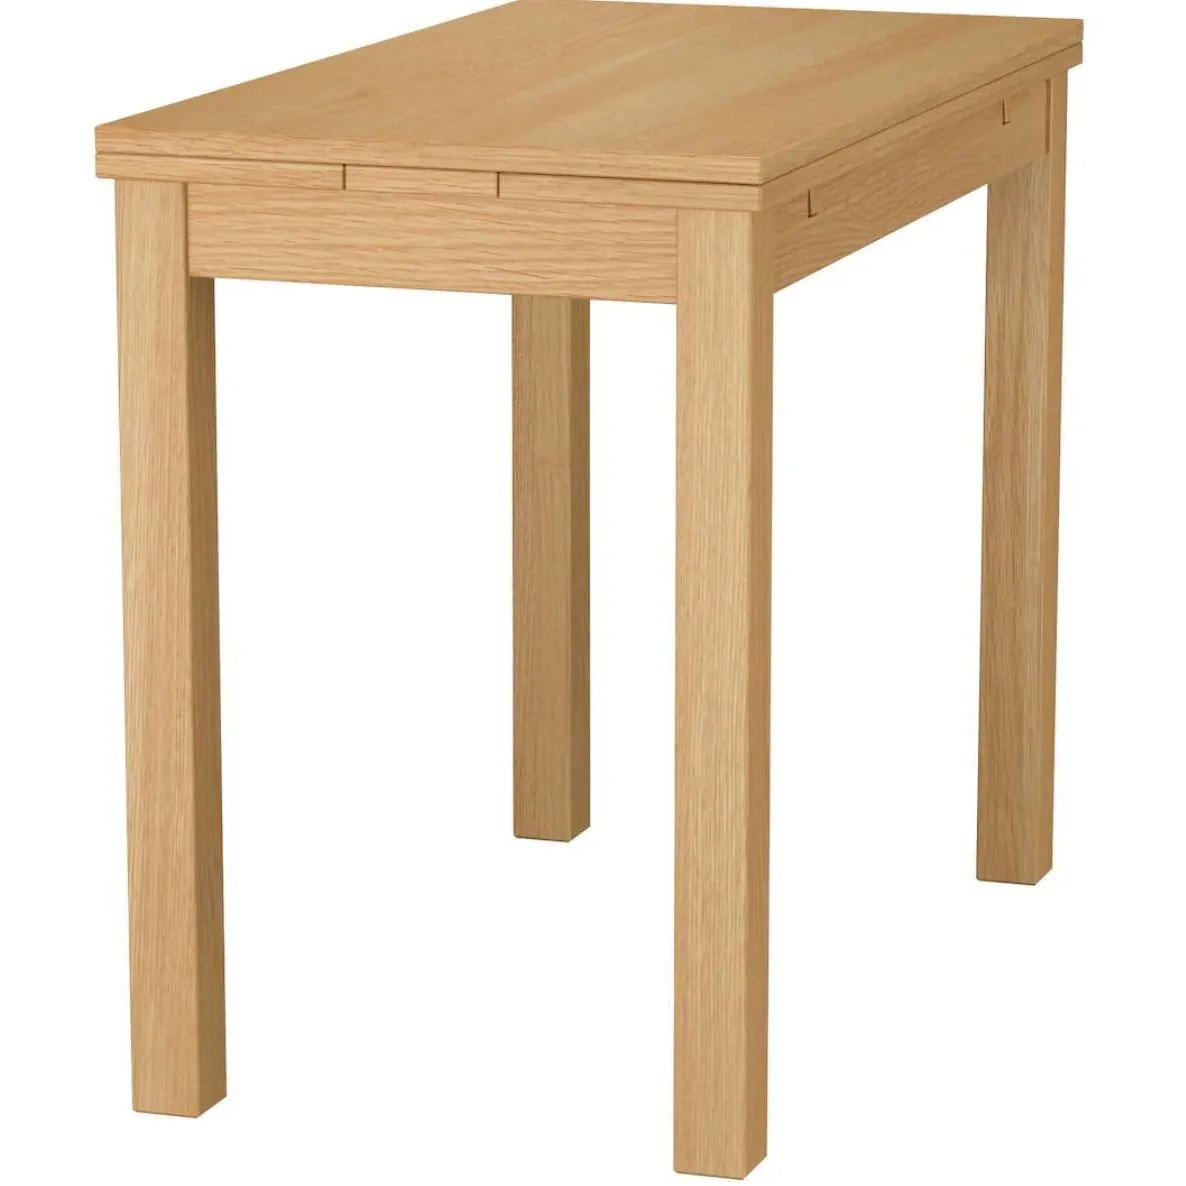 Ikea BJURSTA table photo 1